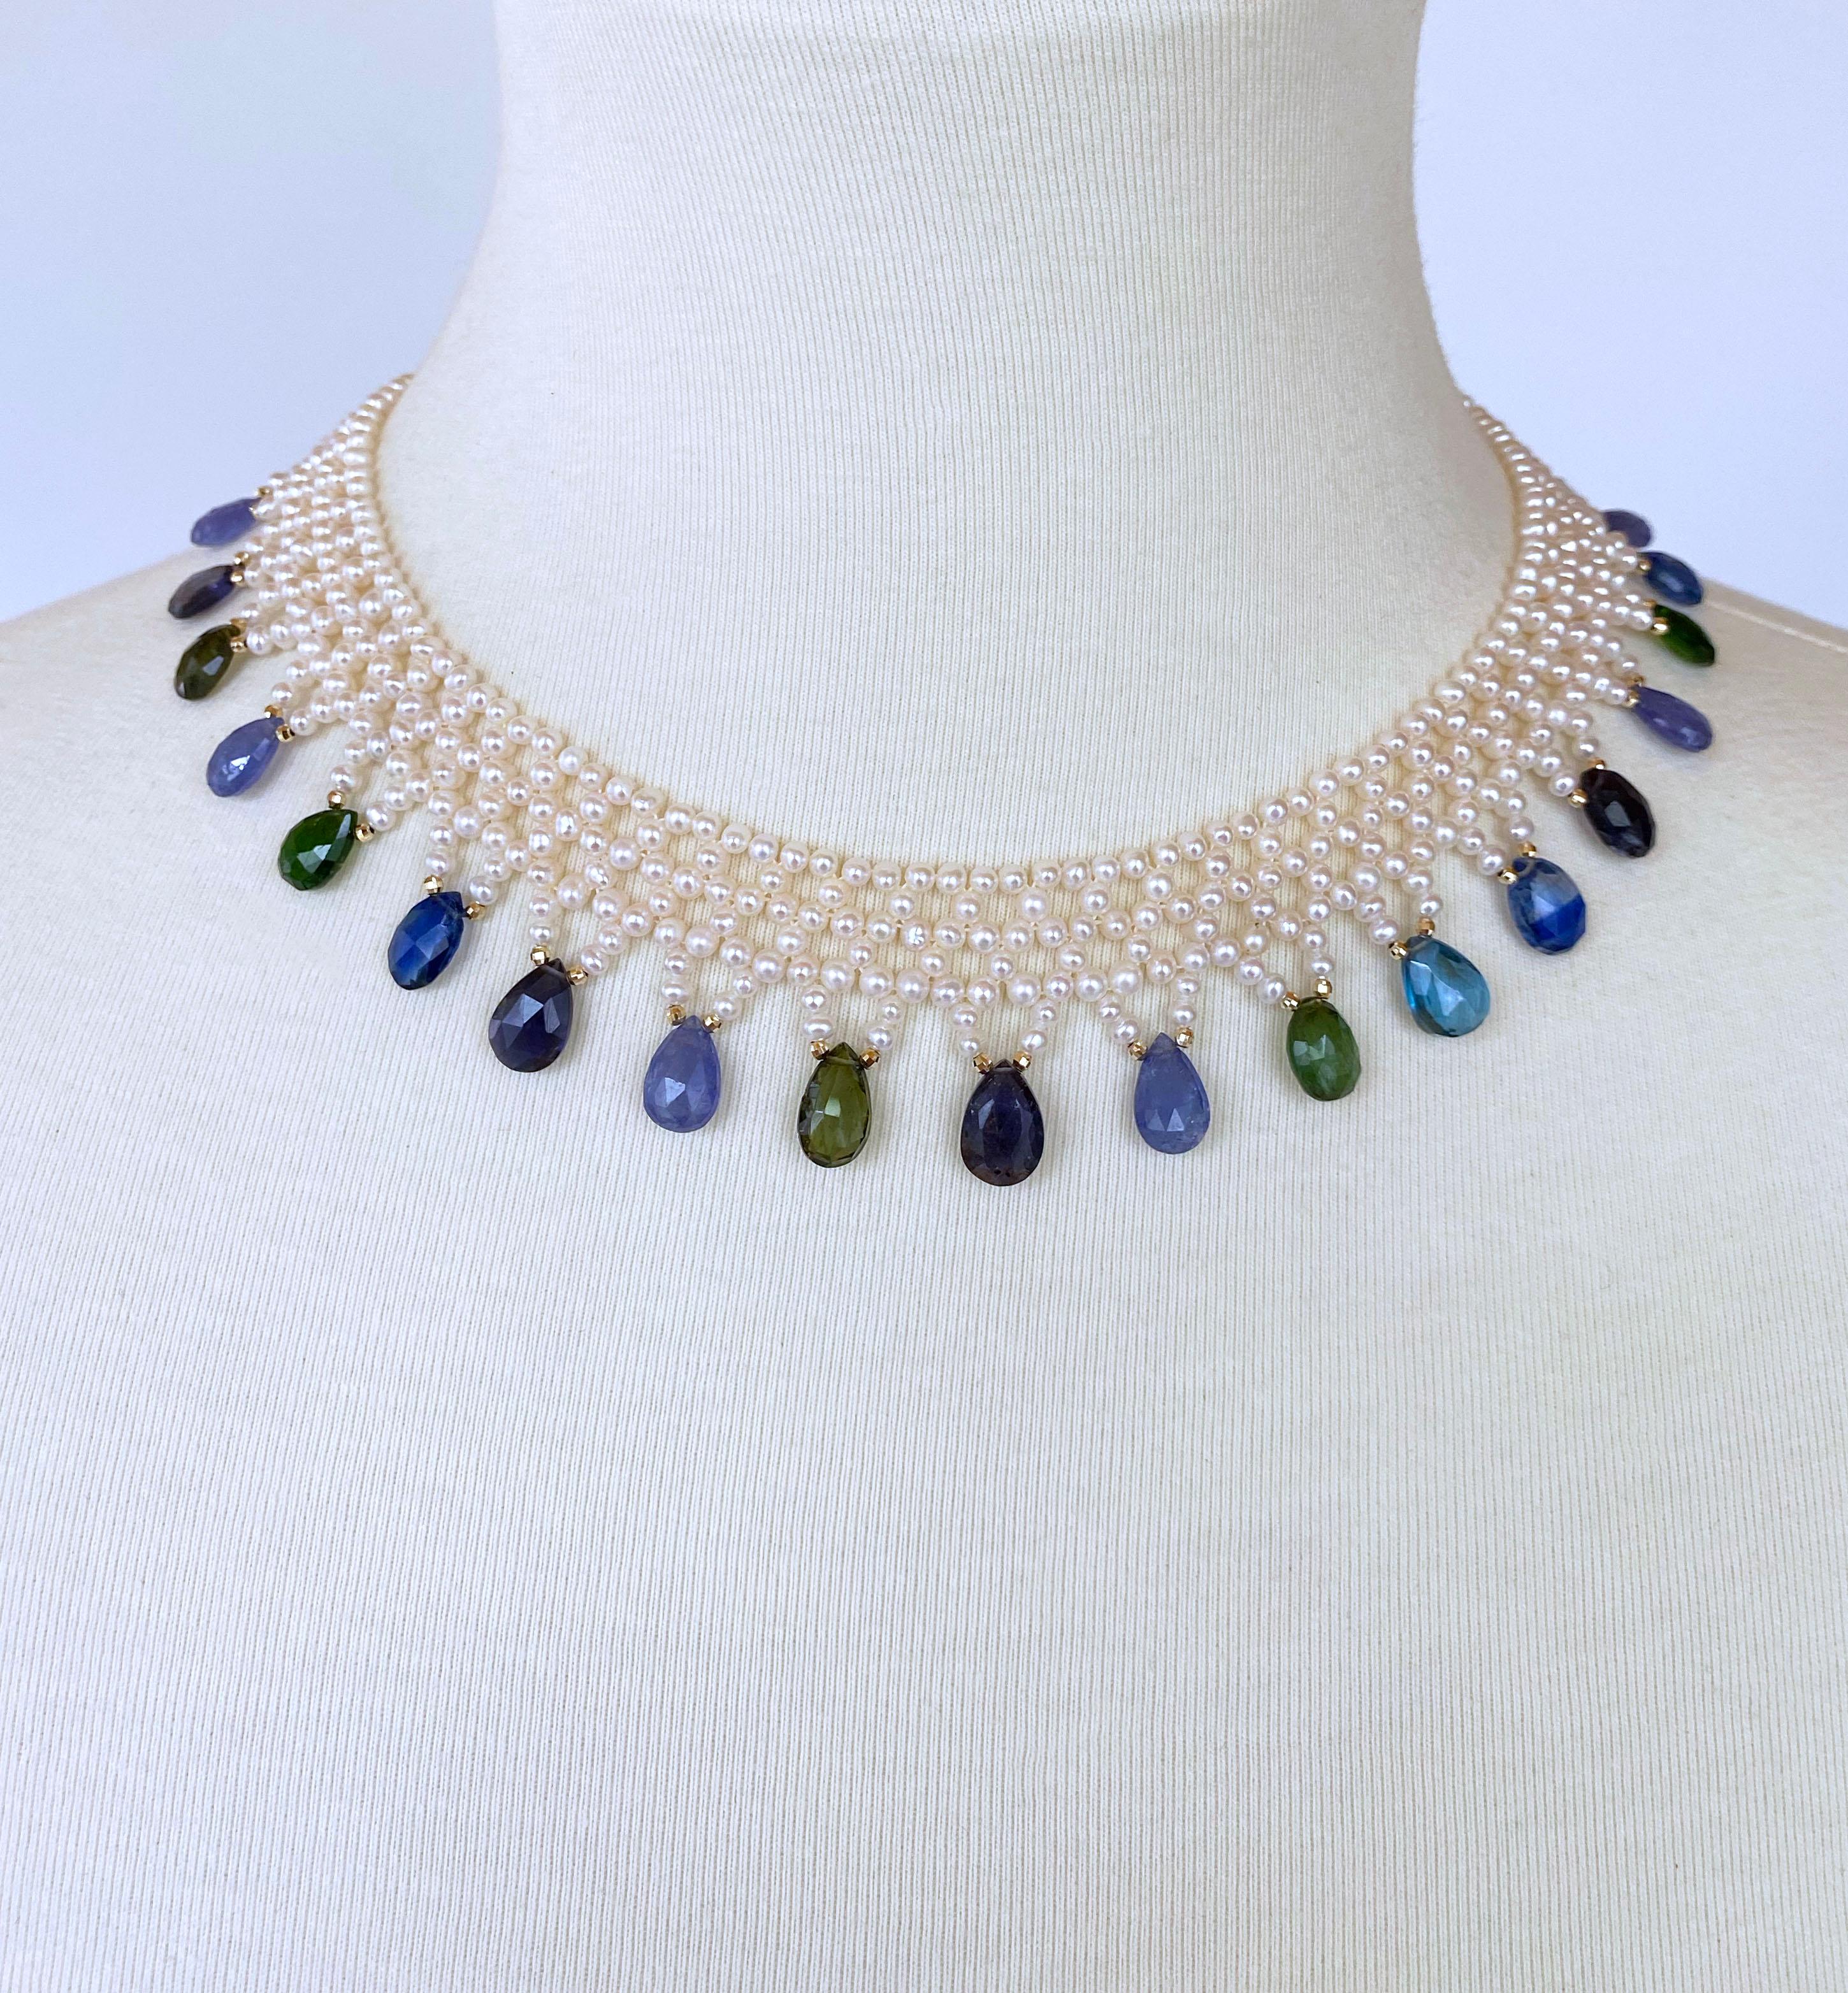 Klassisches Stück von Marina J. Diese wunderschöne, handgefertigte Halskette besteht aus hochglänzenden Perlen, die in ein enges Spitzendesign eingewebt sind. Die vielfarbigen, kühl getönten Jewel-Brioletten schmücken diese Halskette mit